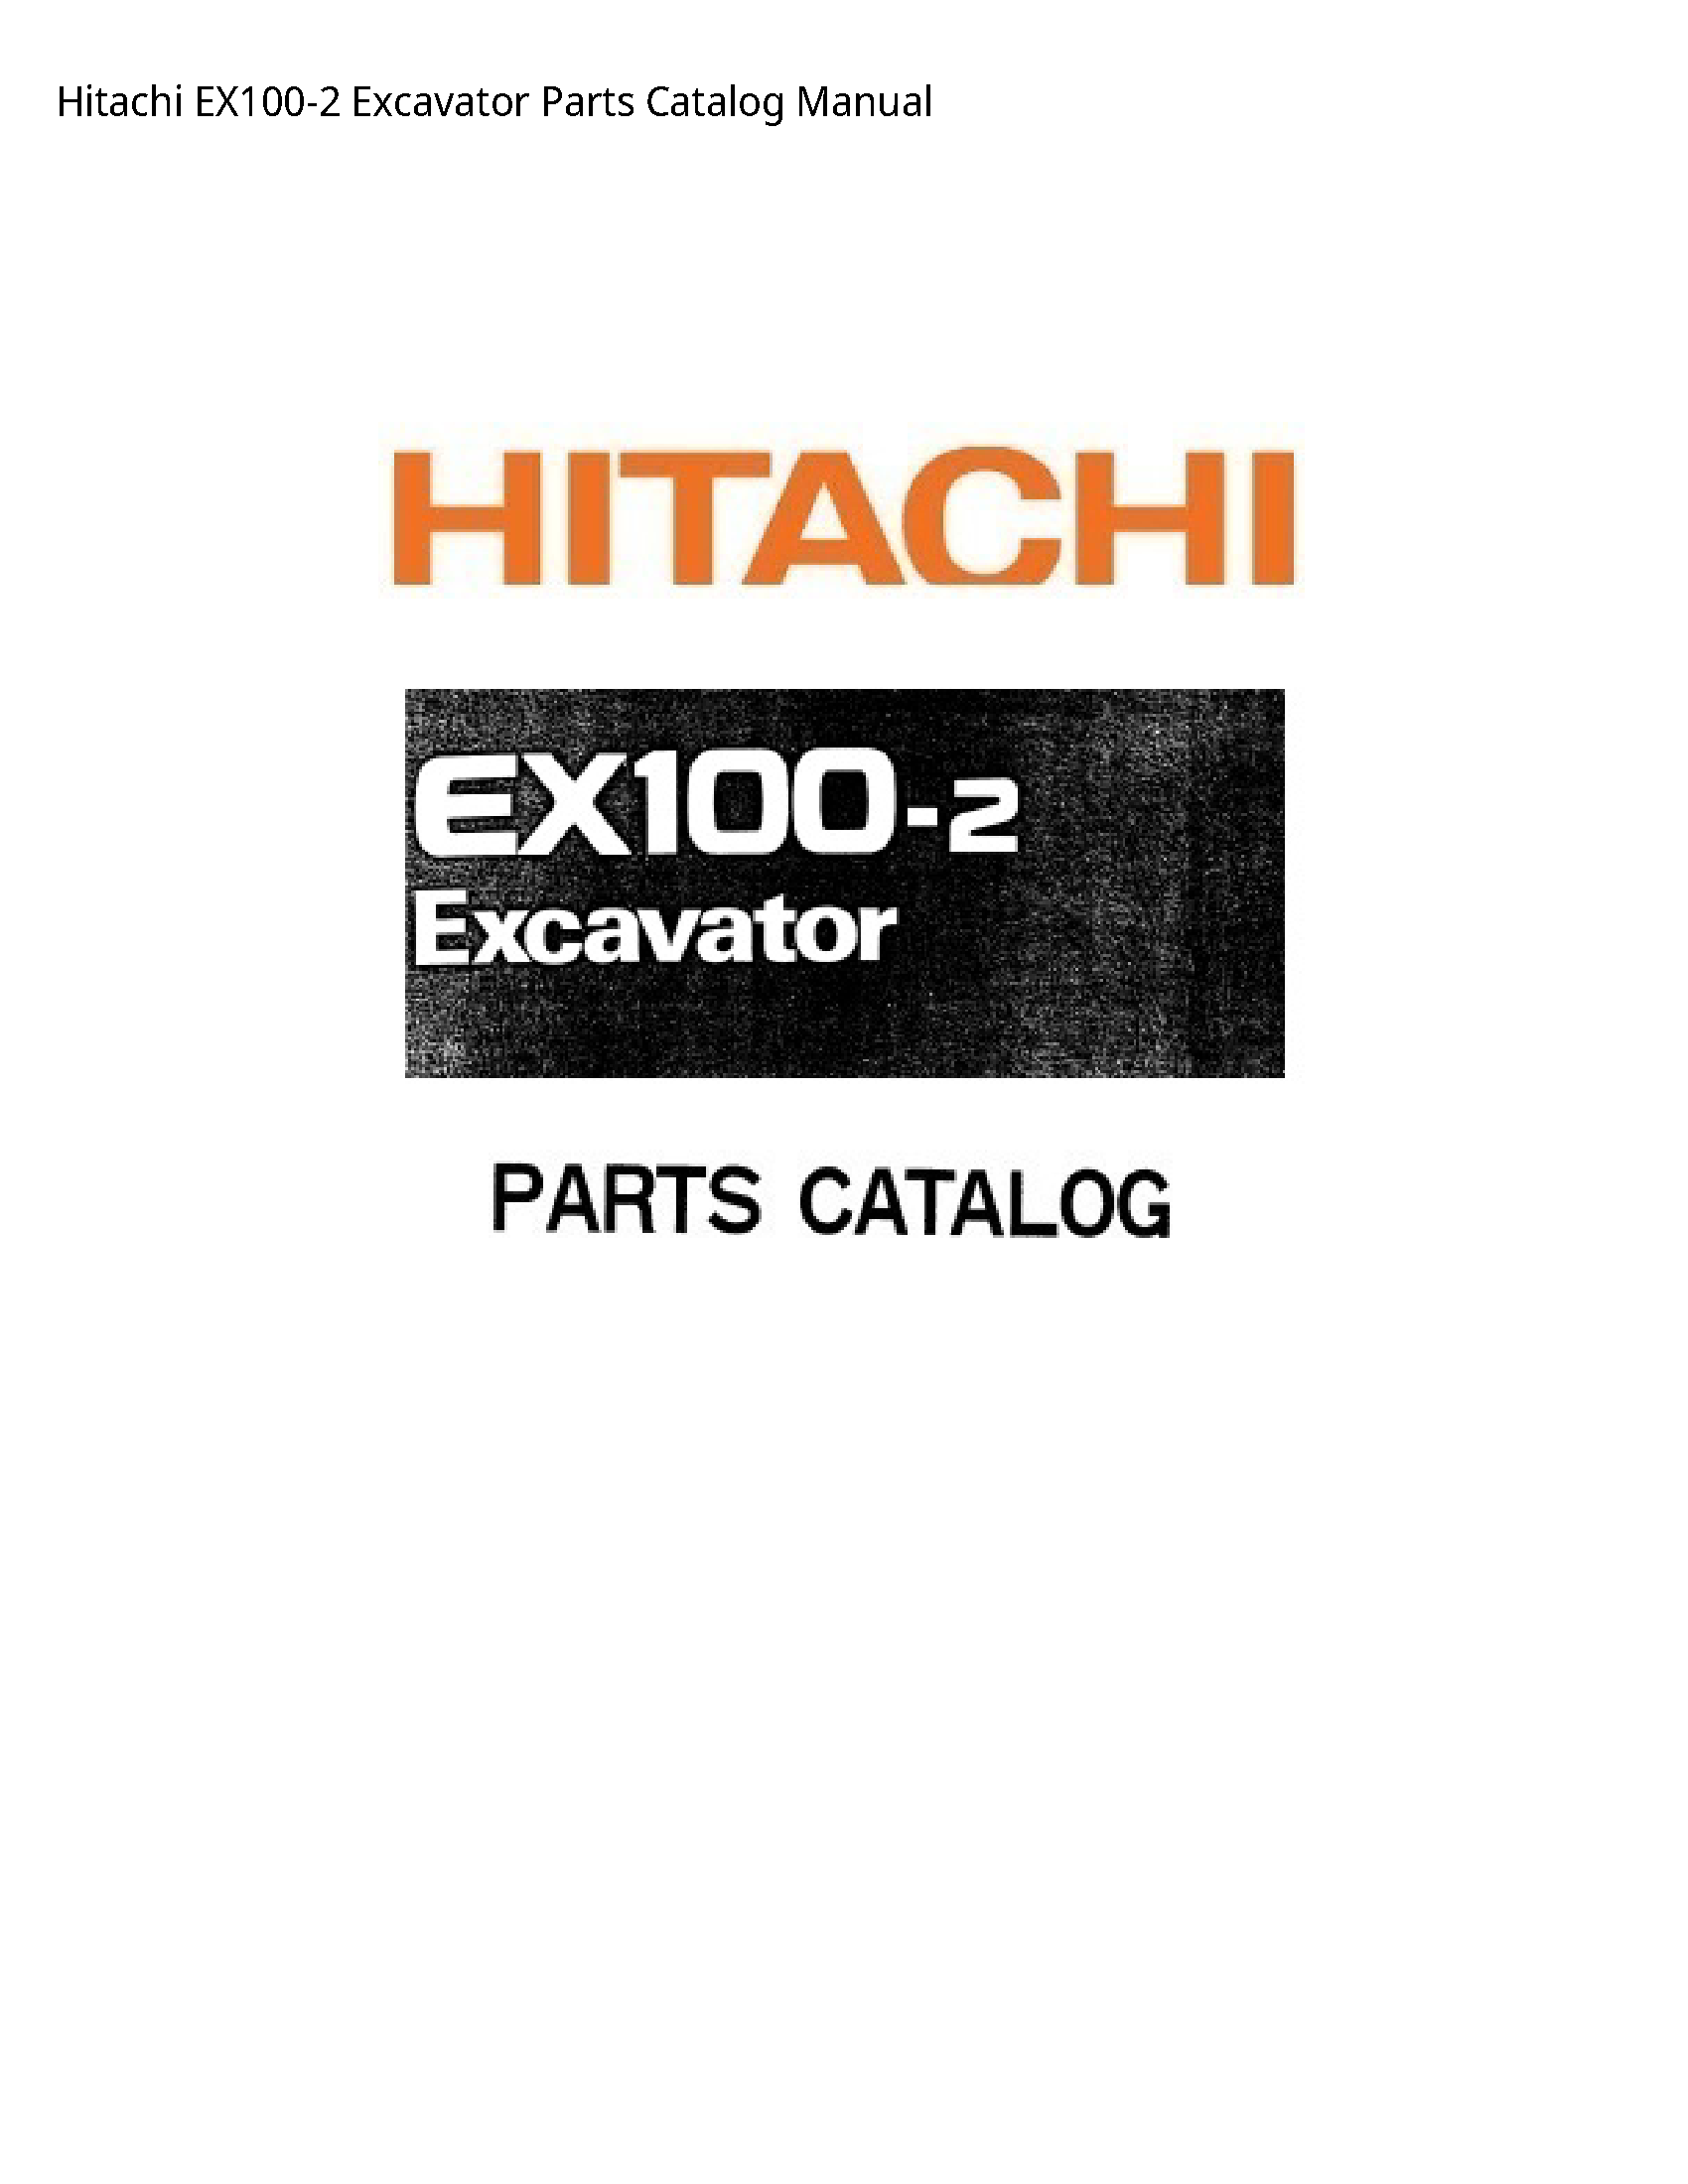 Hitachi EX100-2 Excavator Parts Catalog manual